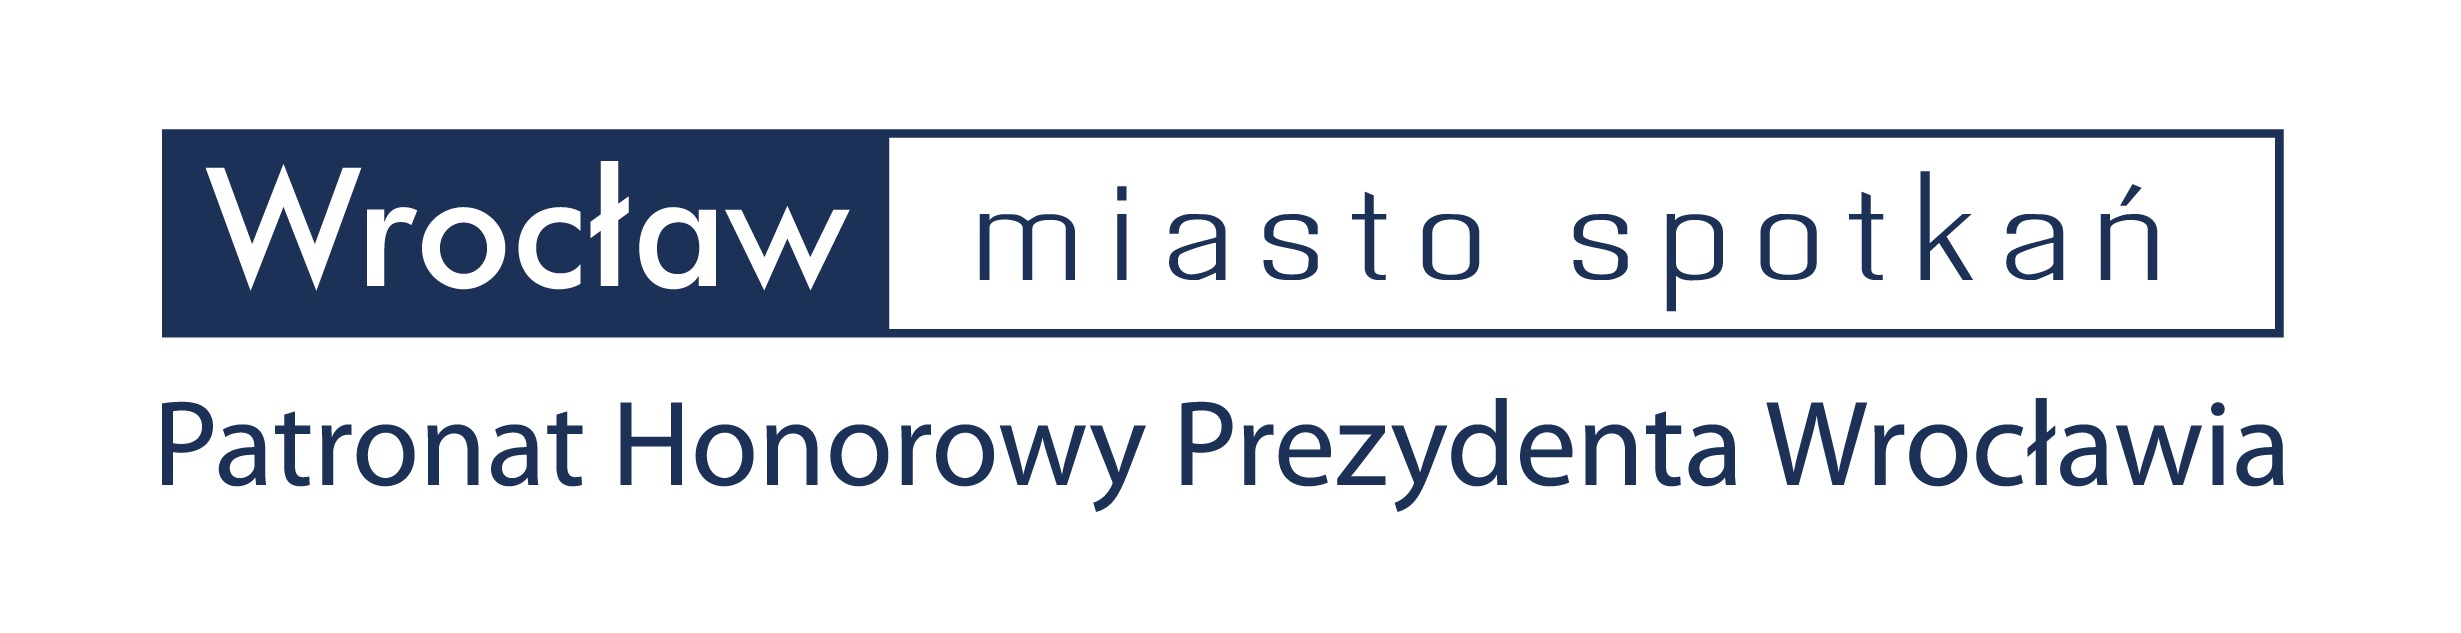 Patronat Honorowy Prezydenta Wrocławia